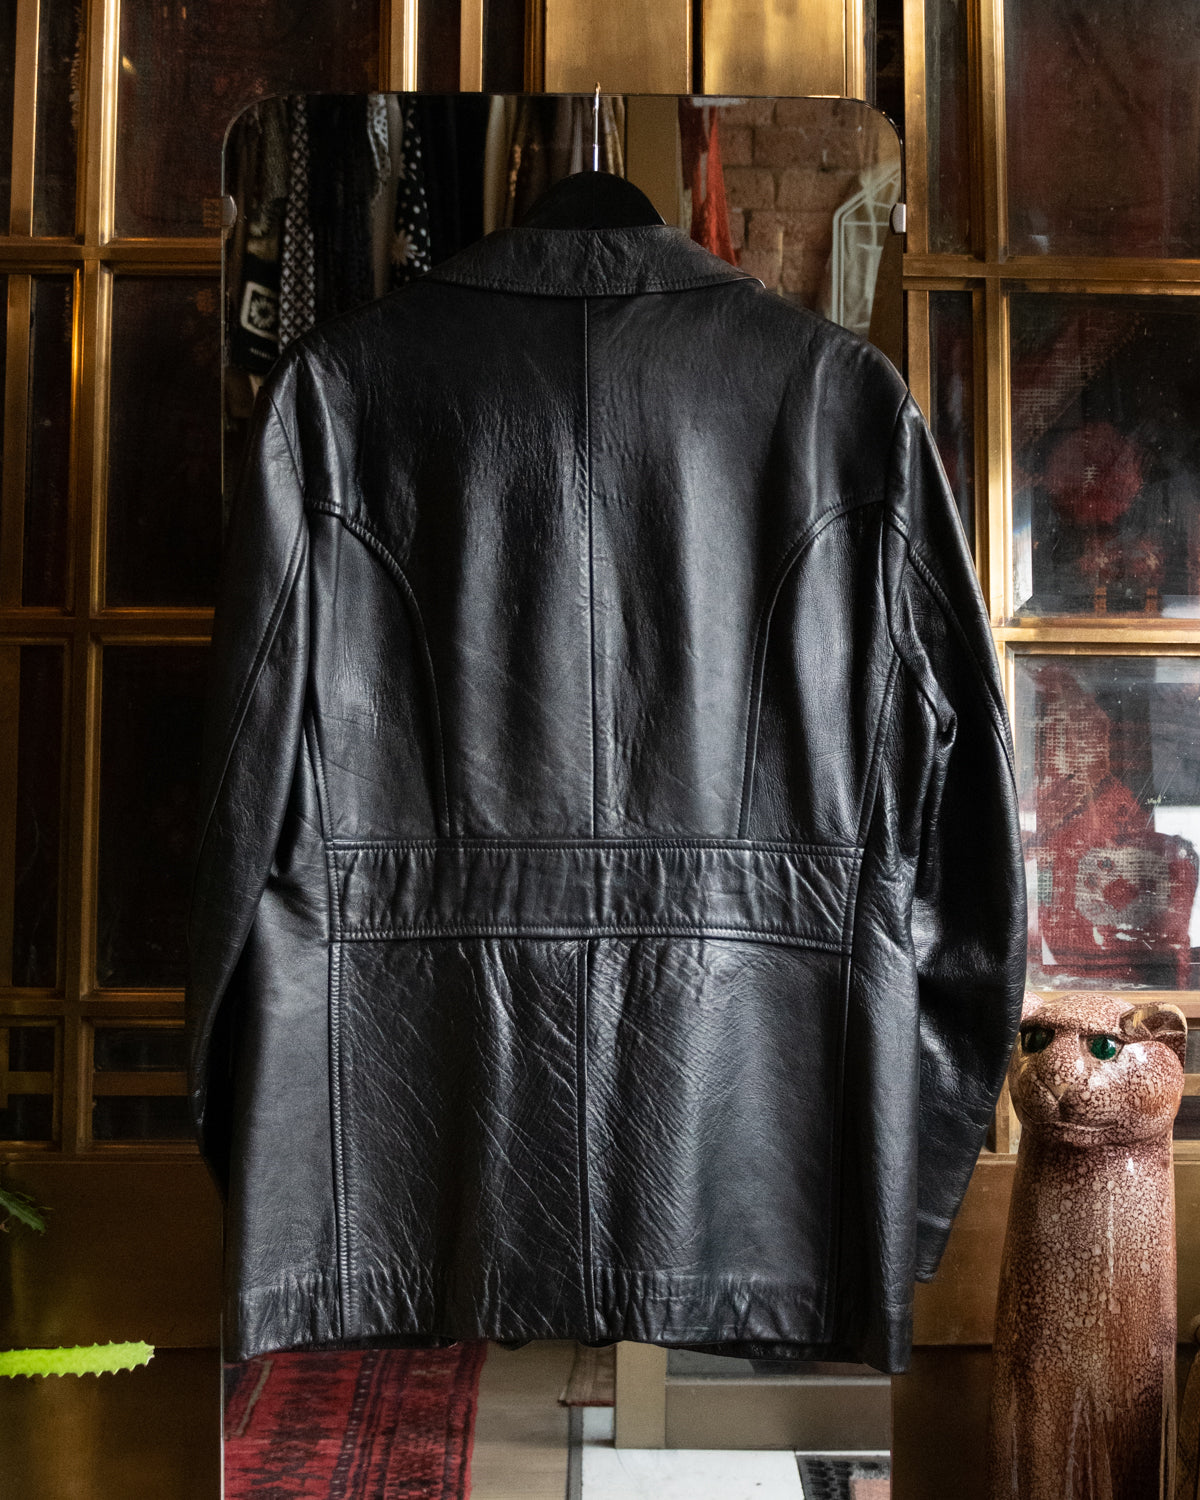 90s Gazelle Black Leather Jacket